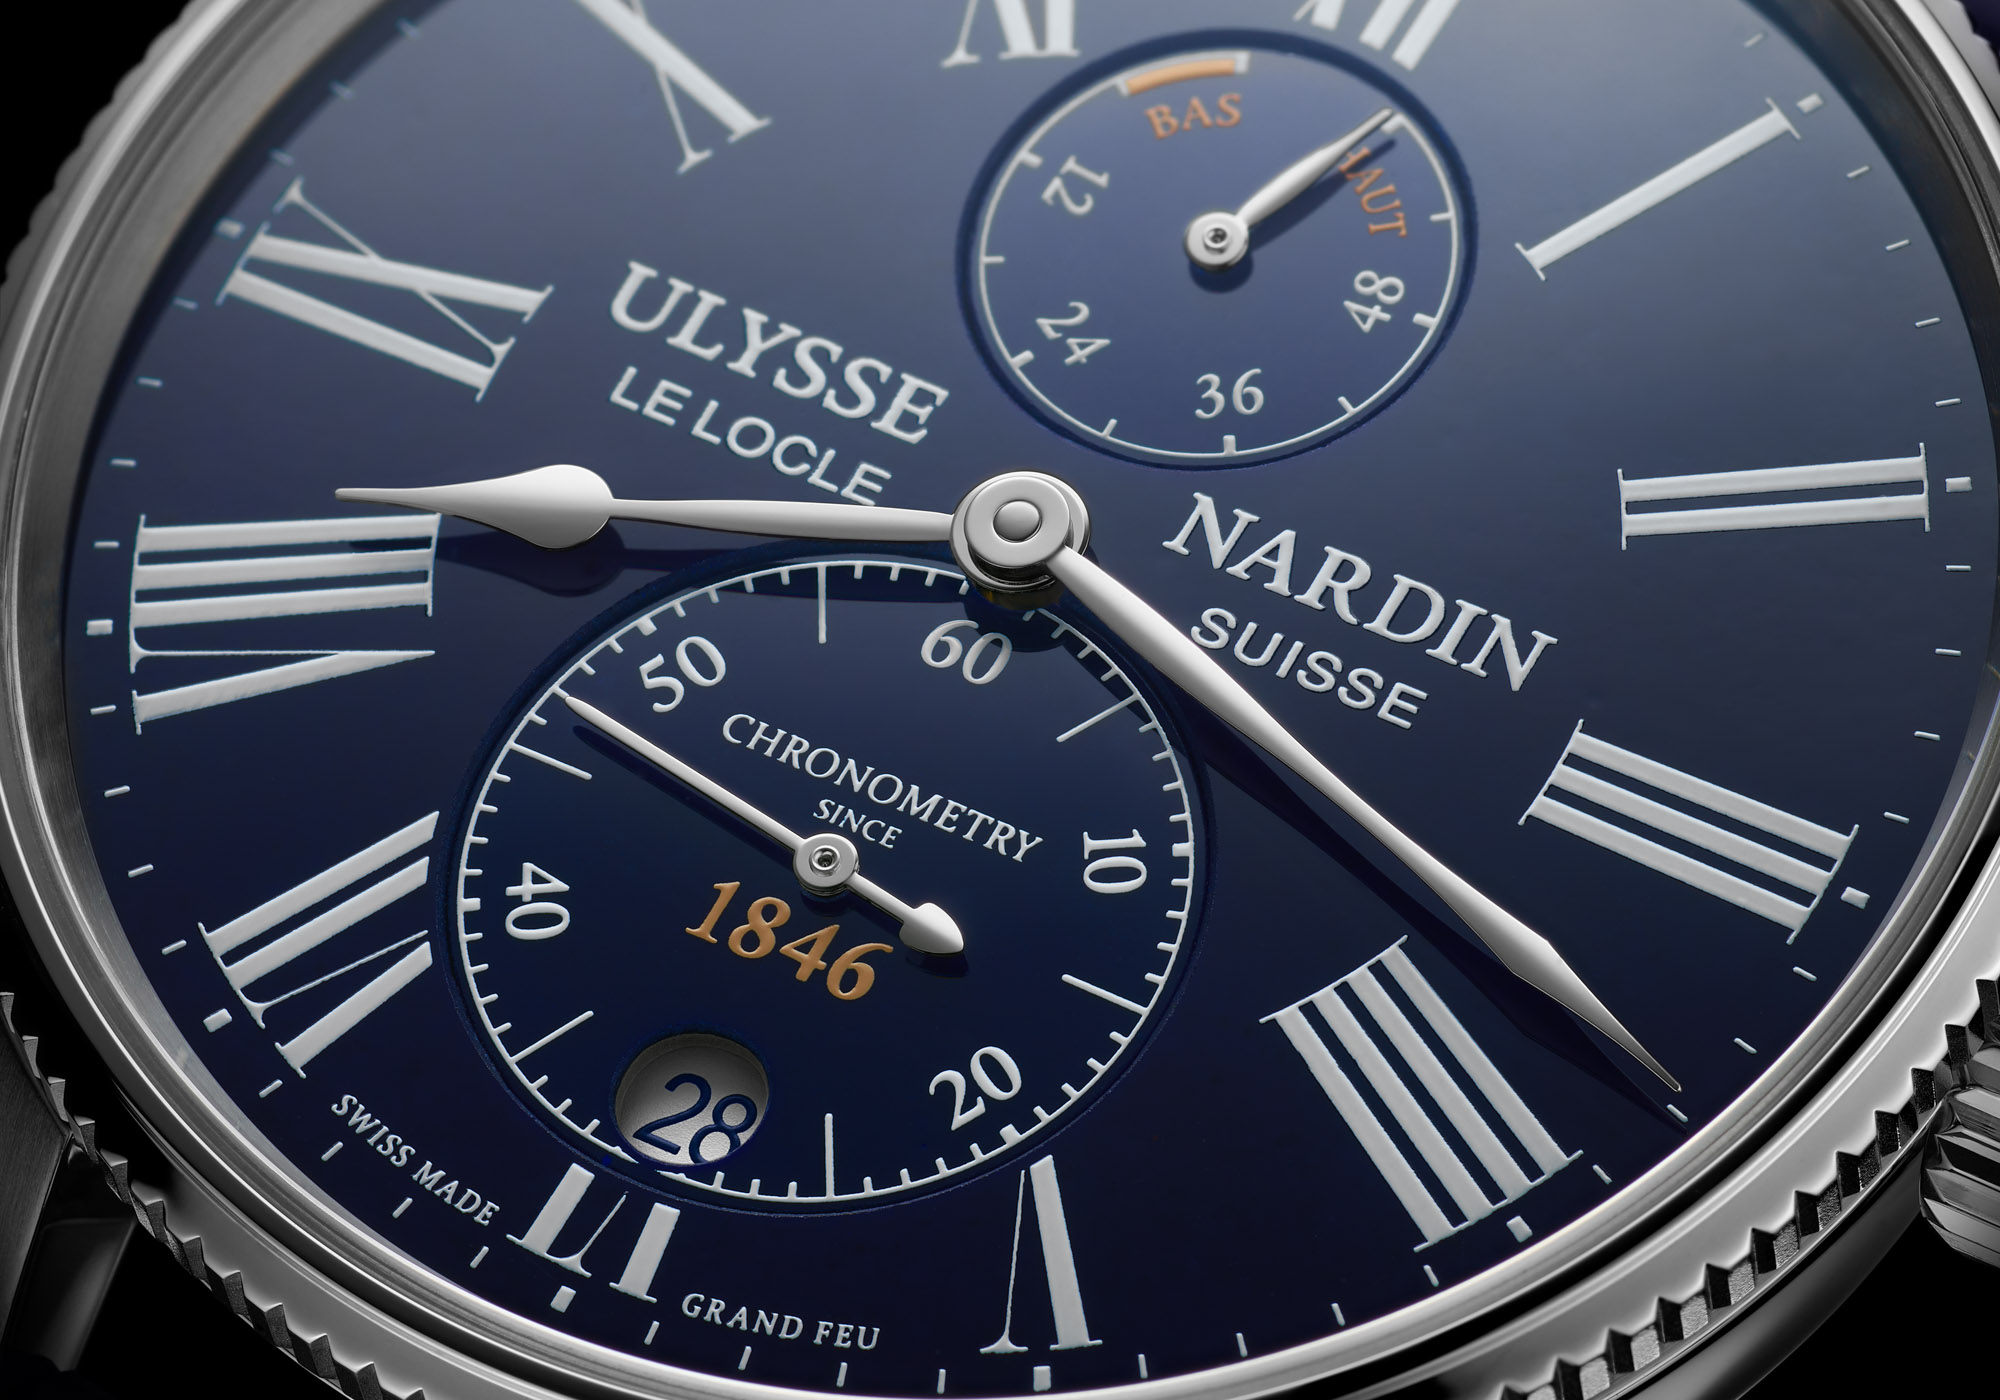 垂死的一类的手表品牌Ulysse Nardin-175周年腕表系列